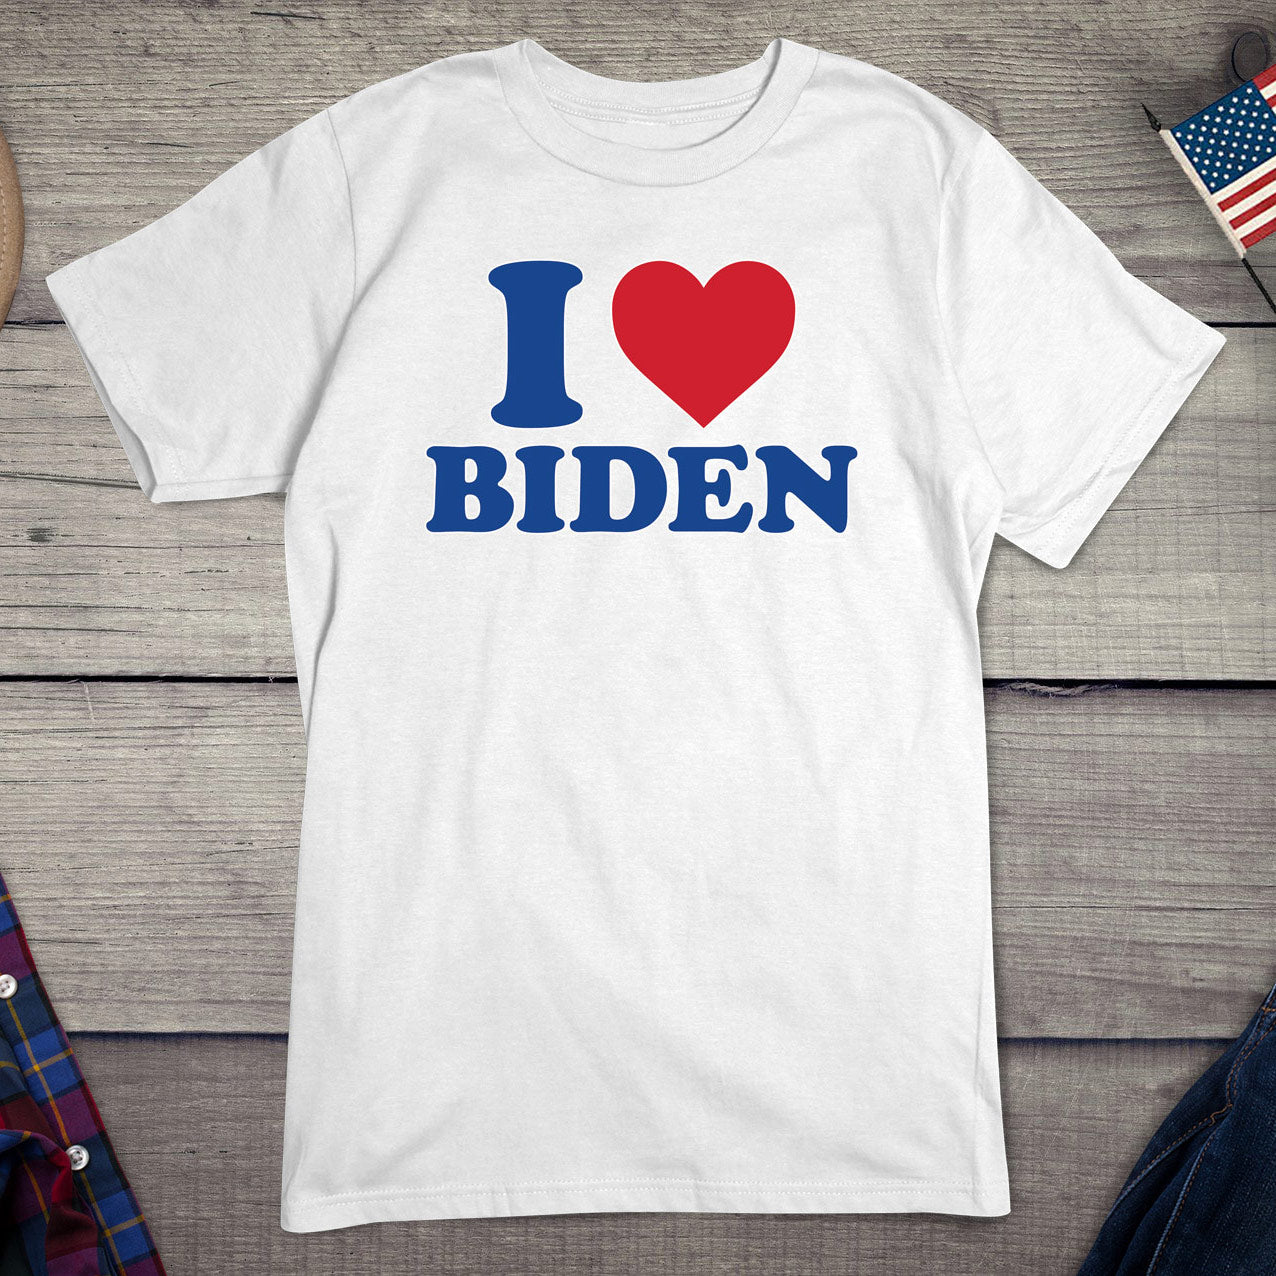 I Heart Biden T-shirt, Political Tee